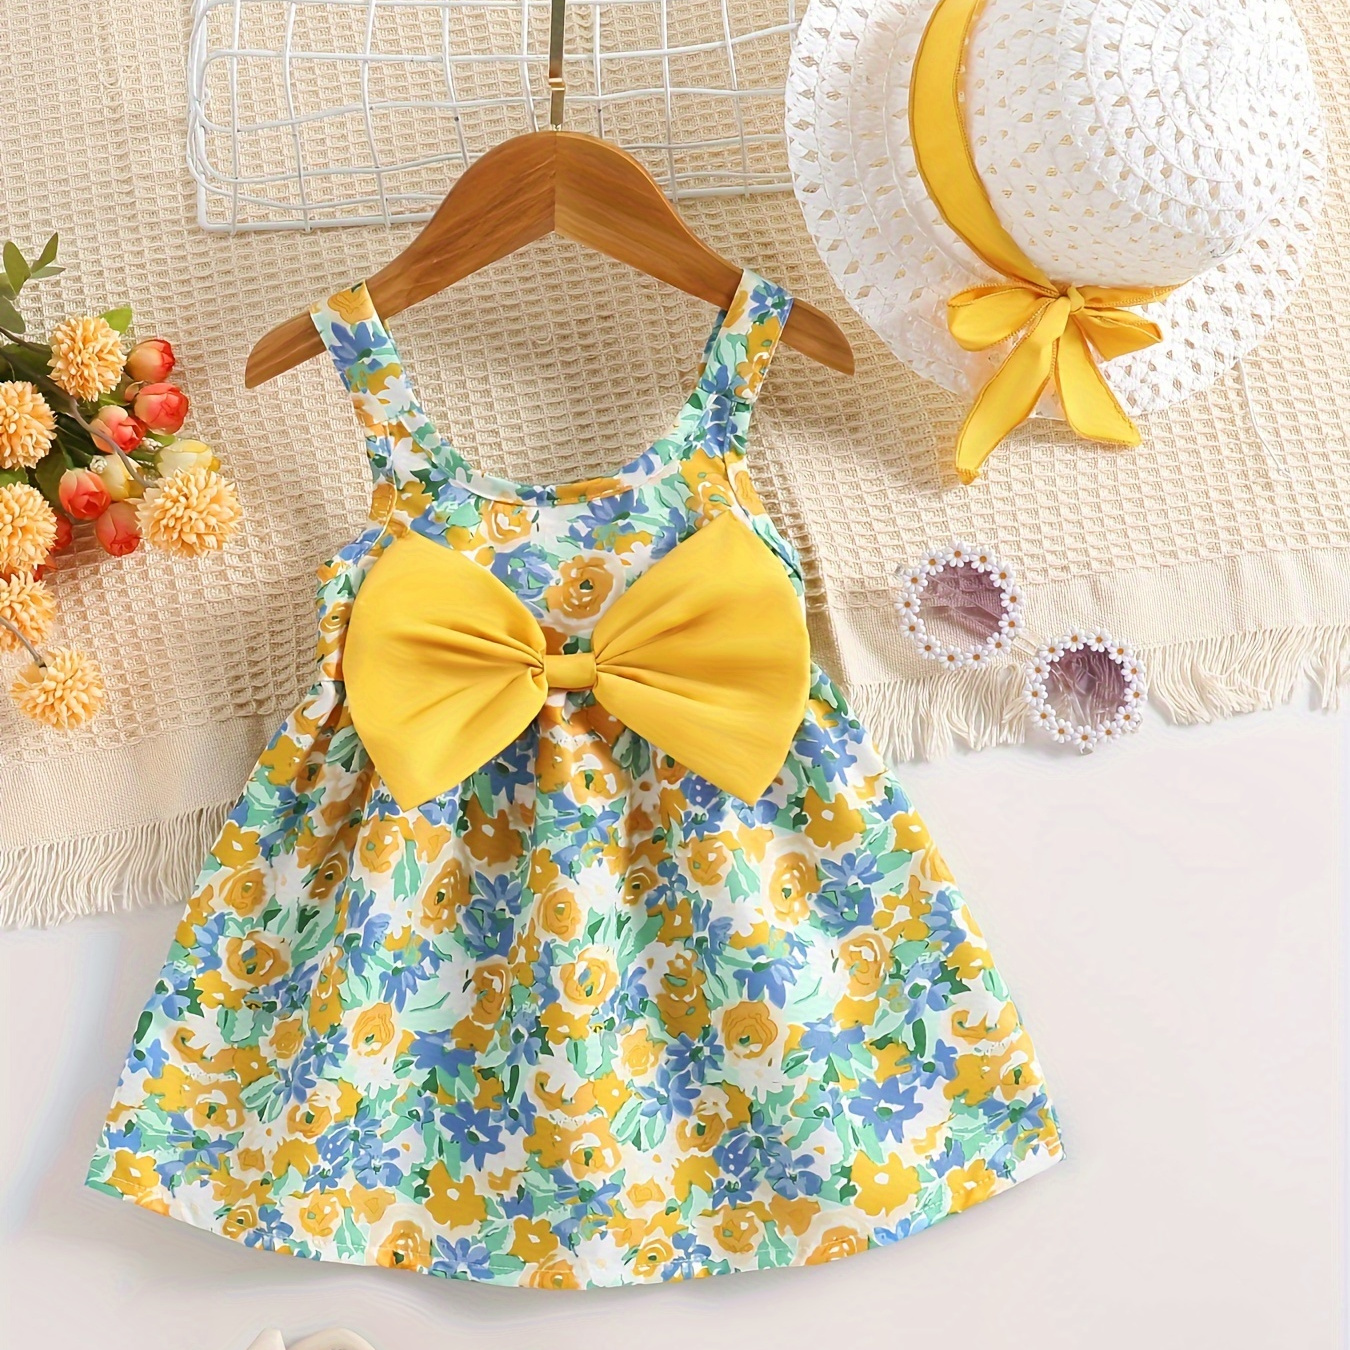 

Baby's Pastoral Style Cartoon Flower Full Print Dress & Hat, Bowknot Decor Sleeveless Dress, Infant & Toddler Girl's Clothing For Summer/spring